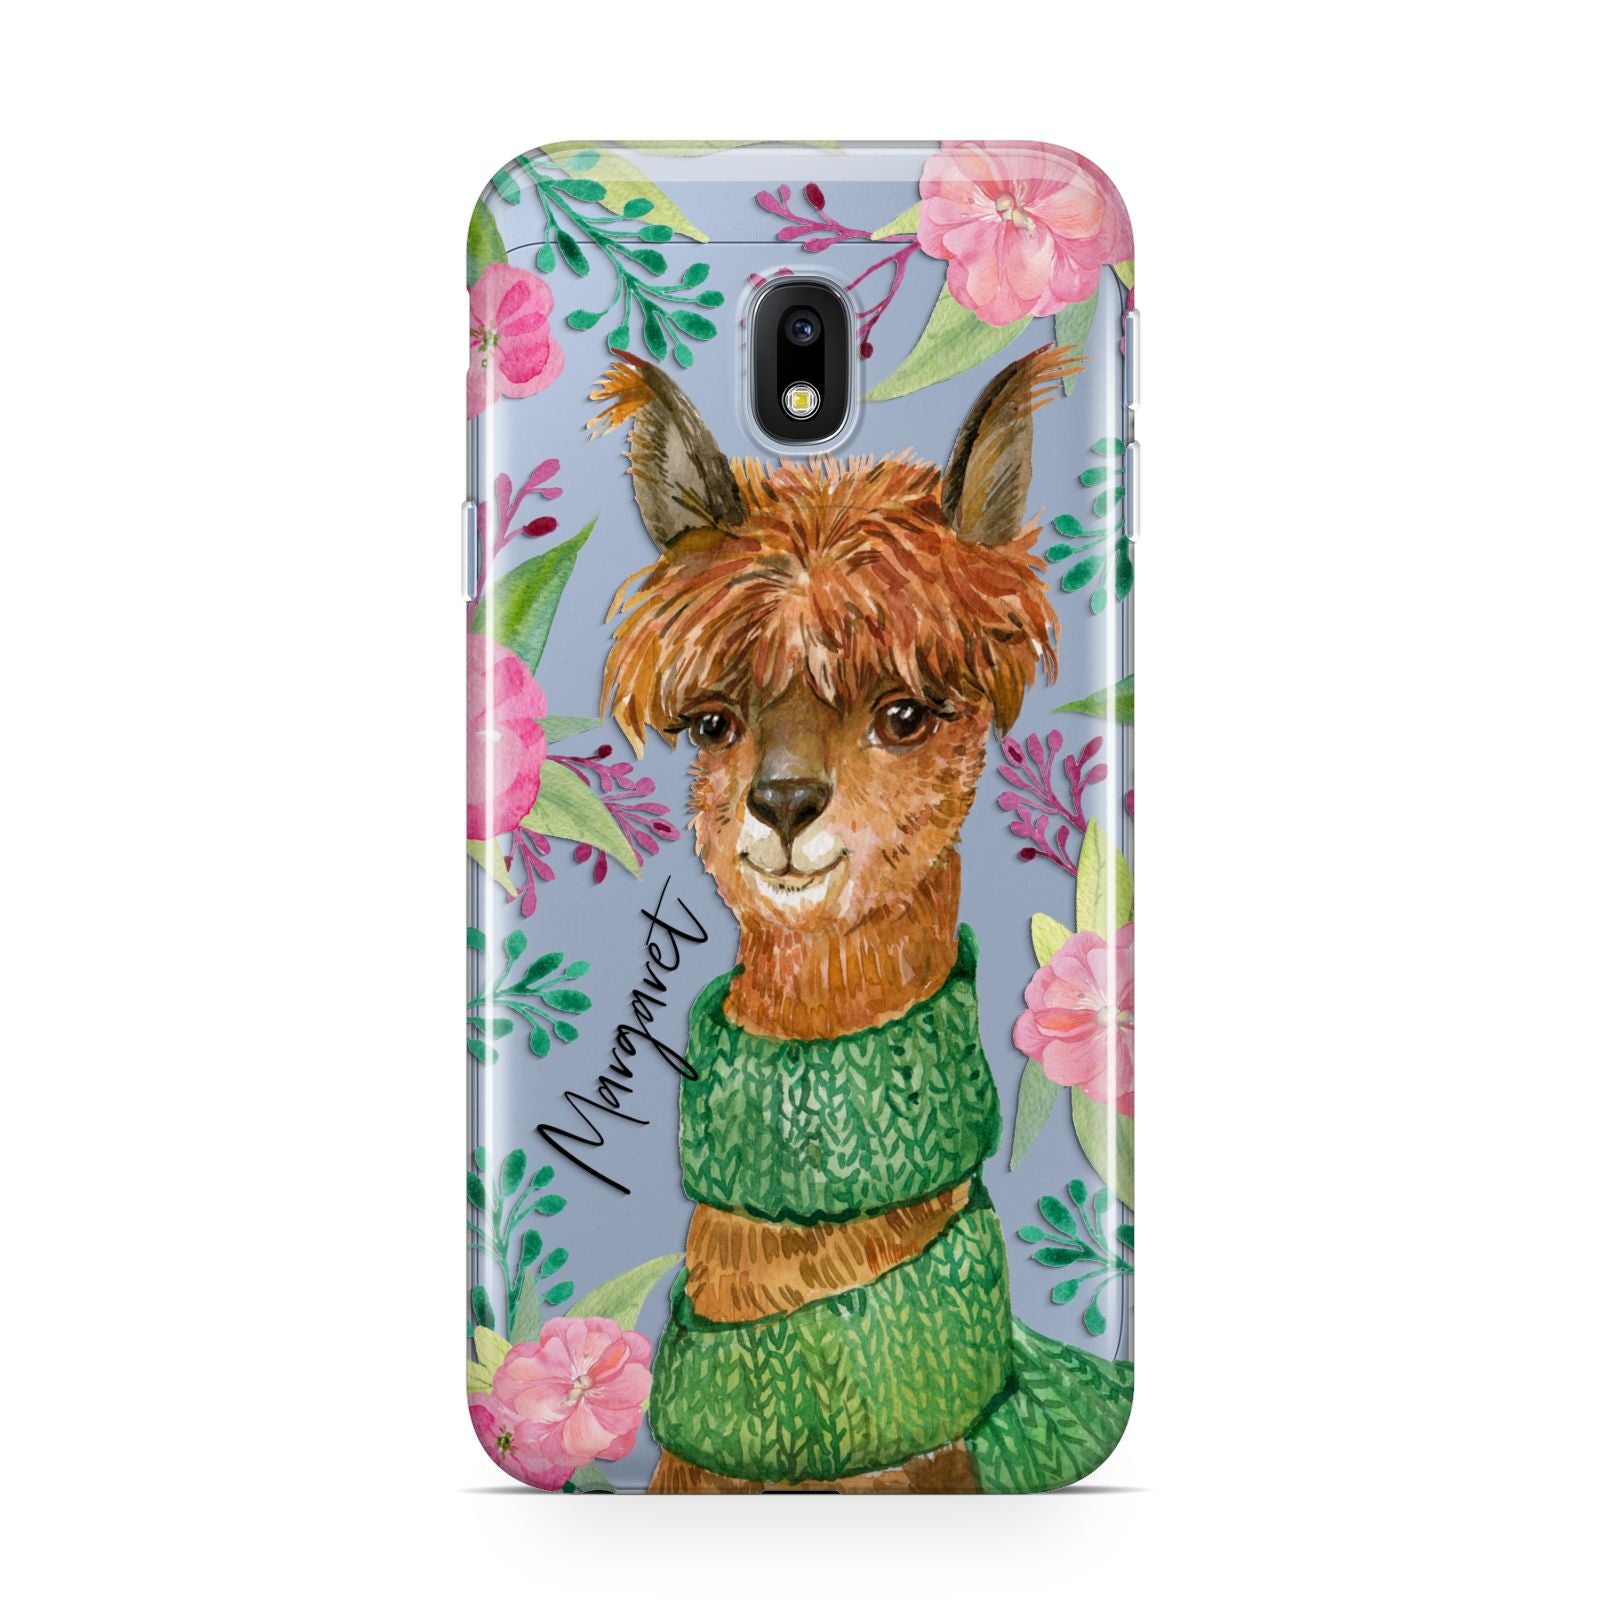 Personalised Alpaca Samsung Galaxy J3 2017 Case